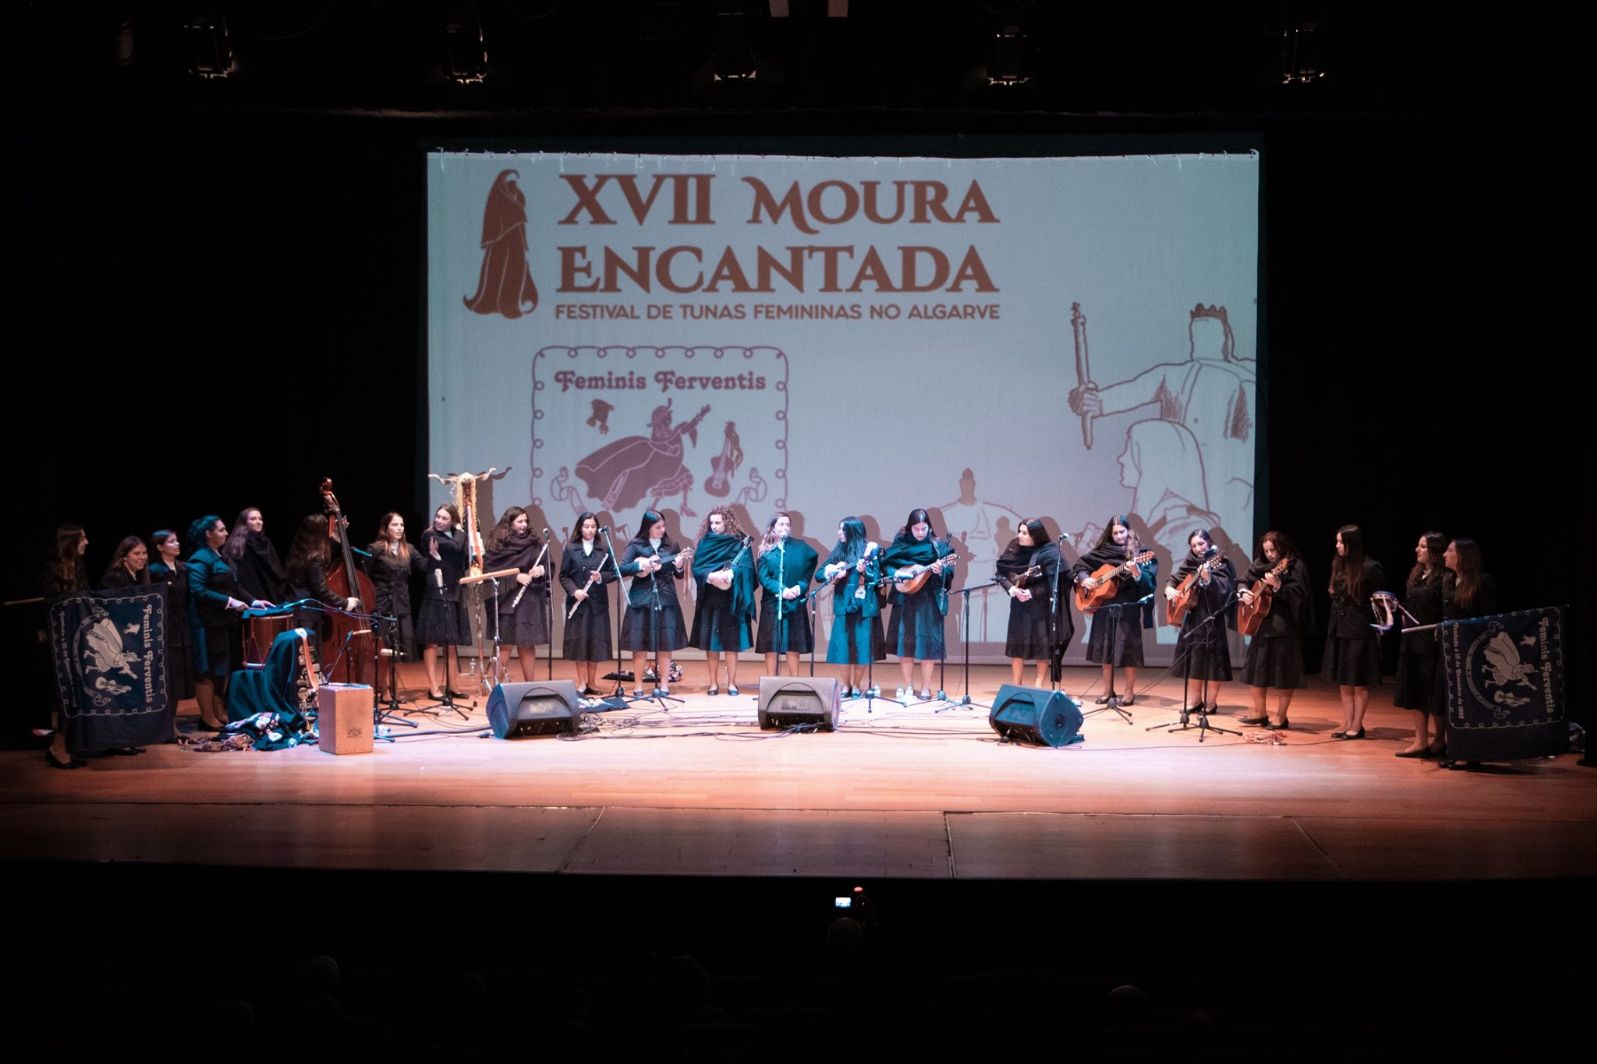 Festival de Tunas Femininas no Algarve XVII Moura Encantada está de regresso em Faro